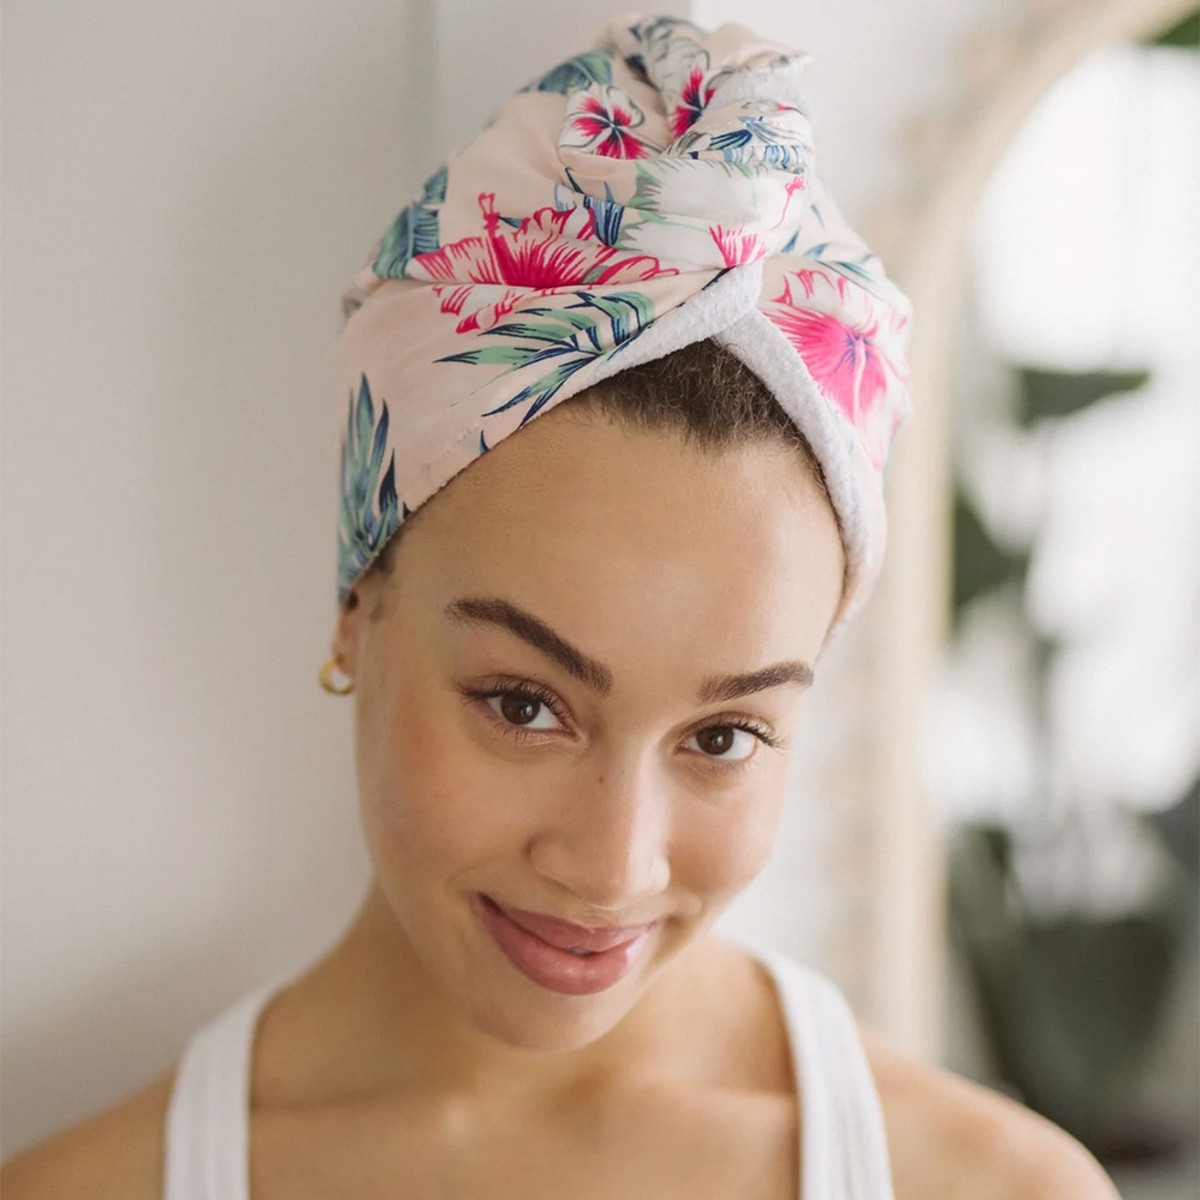 Swoon Skin Heavenly Hair Towel in Pink Floral (photo: via Swoon Skin)